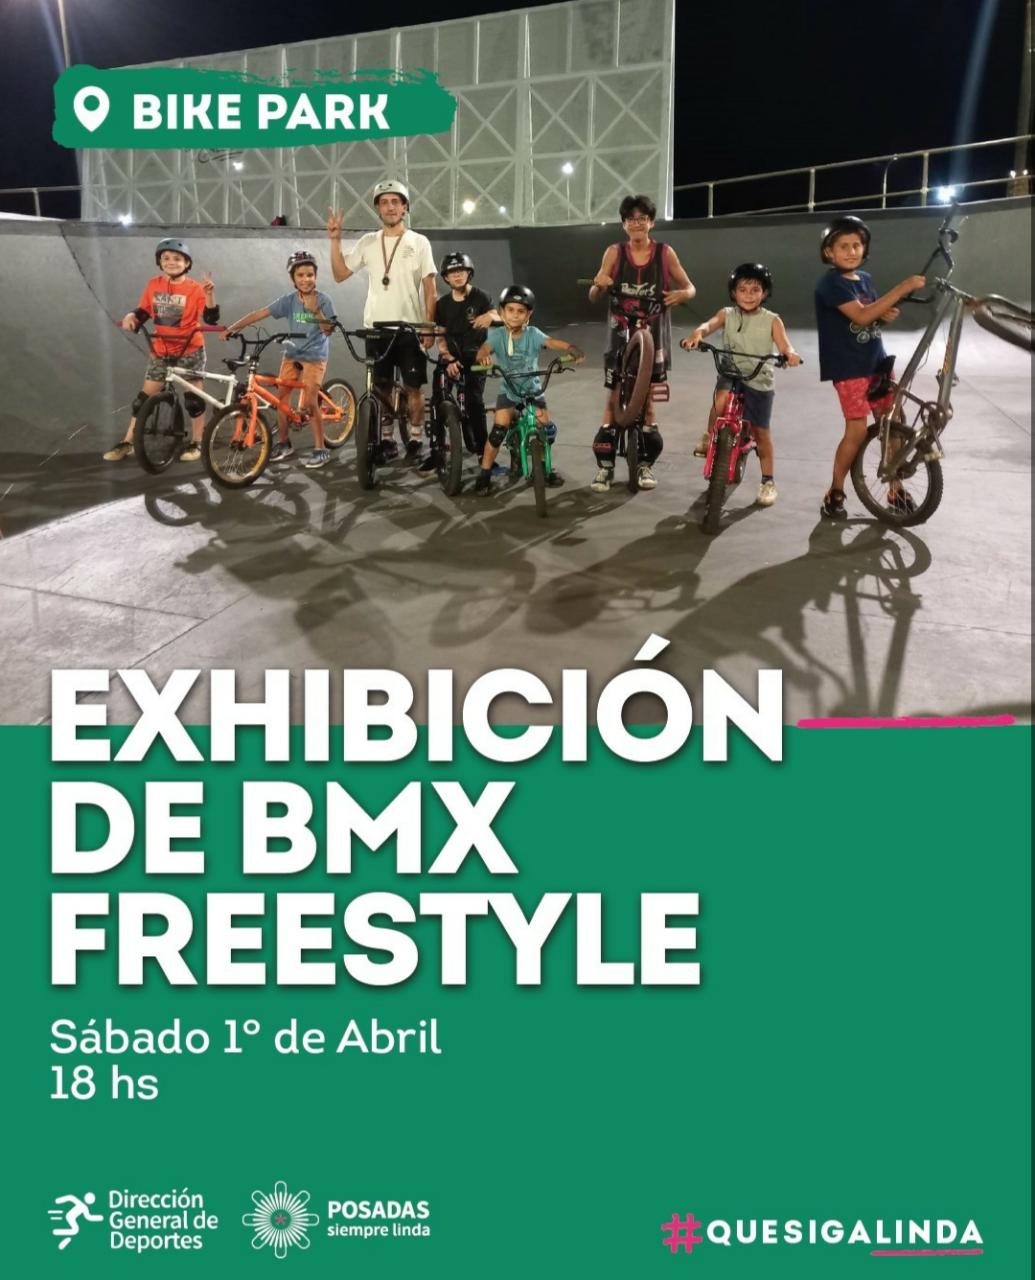 Exhibición de BMX Freestyle en el Bike Park